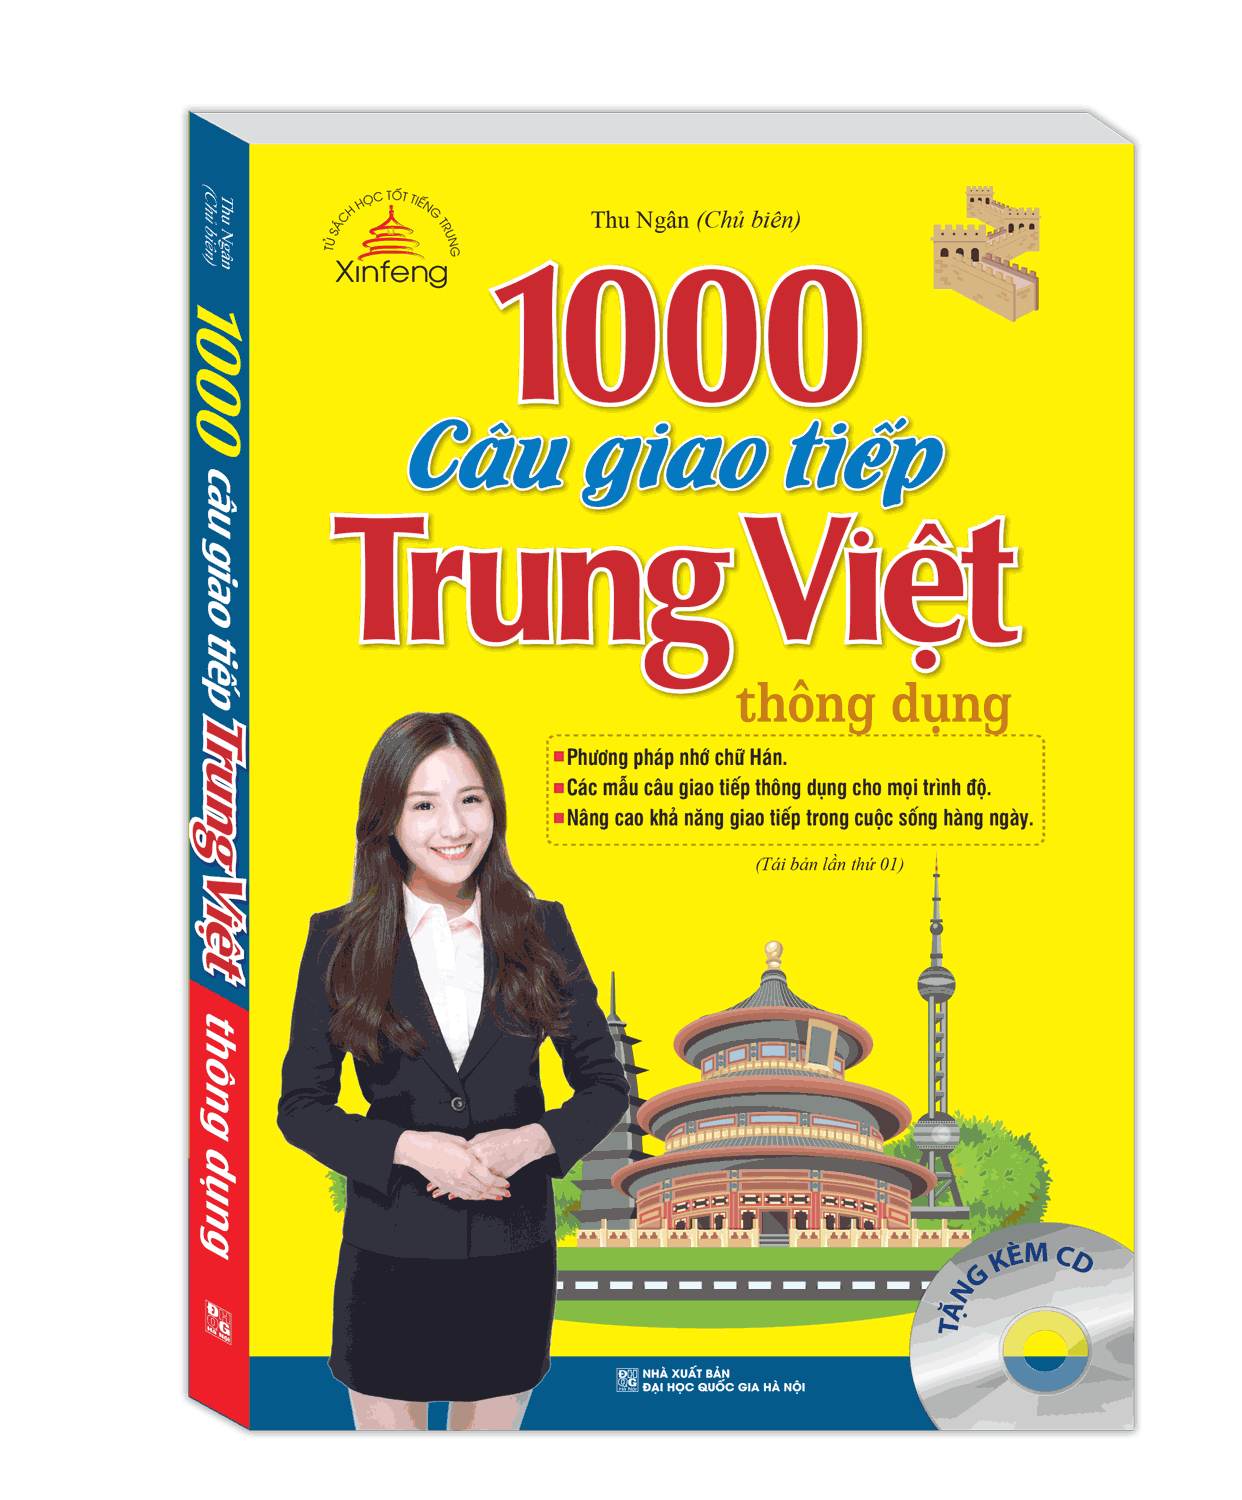 Xinfeng - 1000 Câu Giao Tiếp Trung Việt Thông Dụng (Tái Bản Kèm CD)